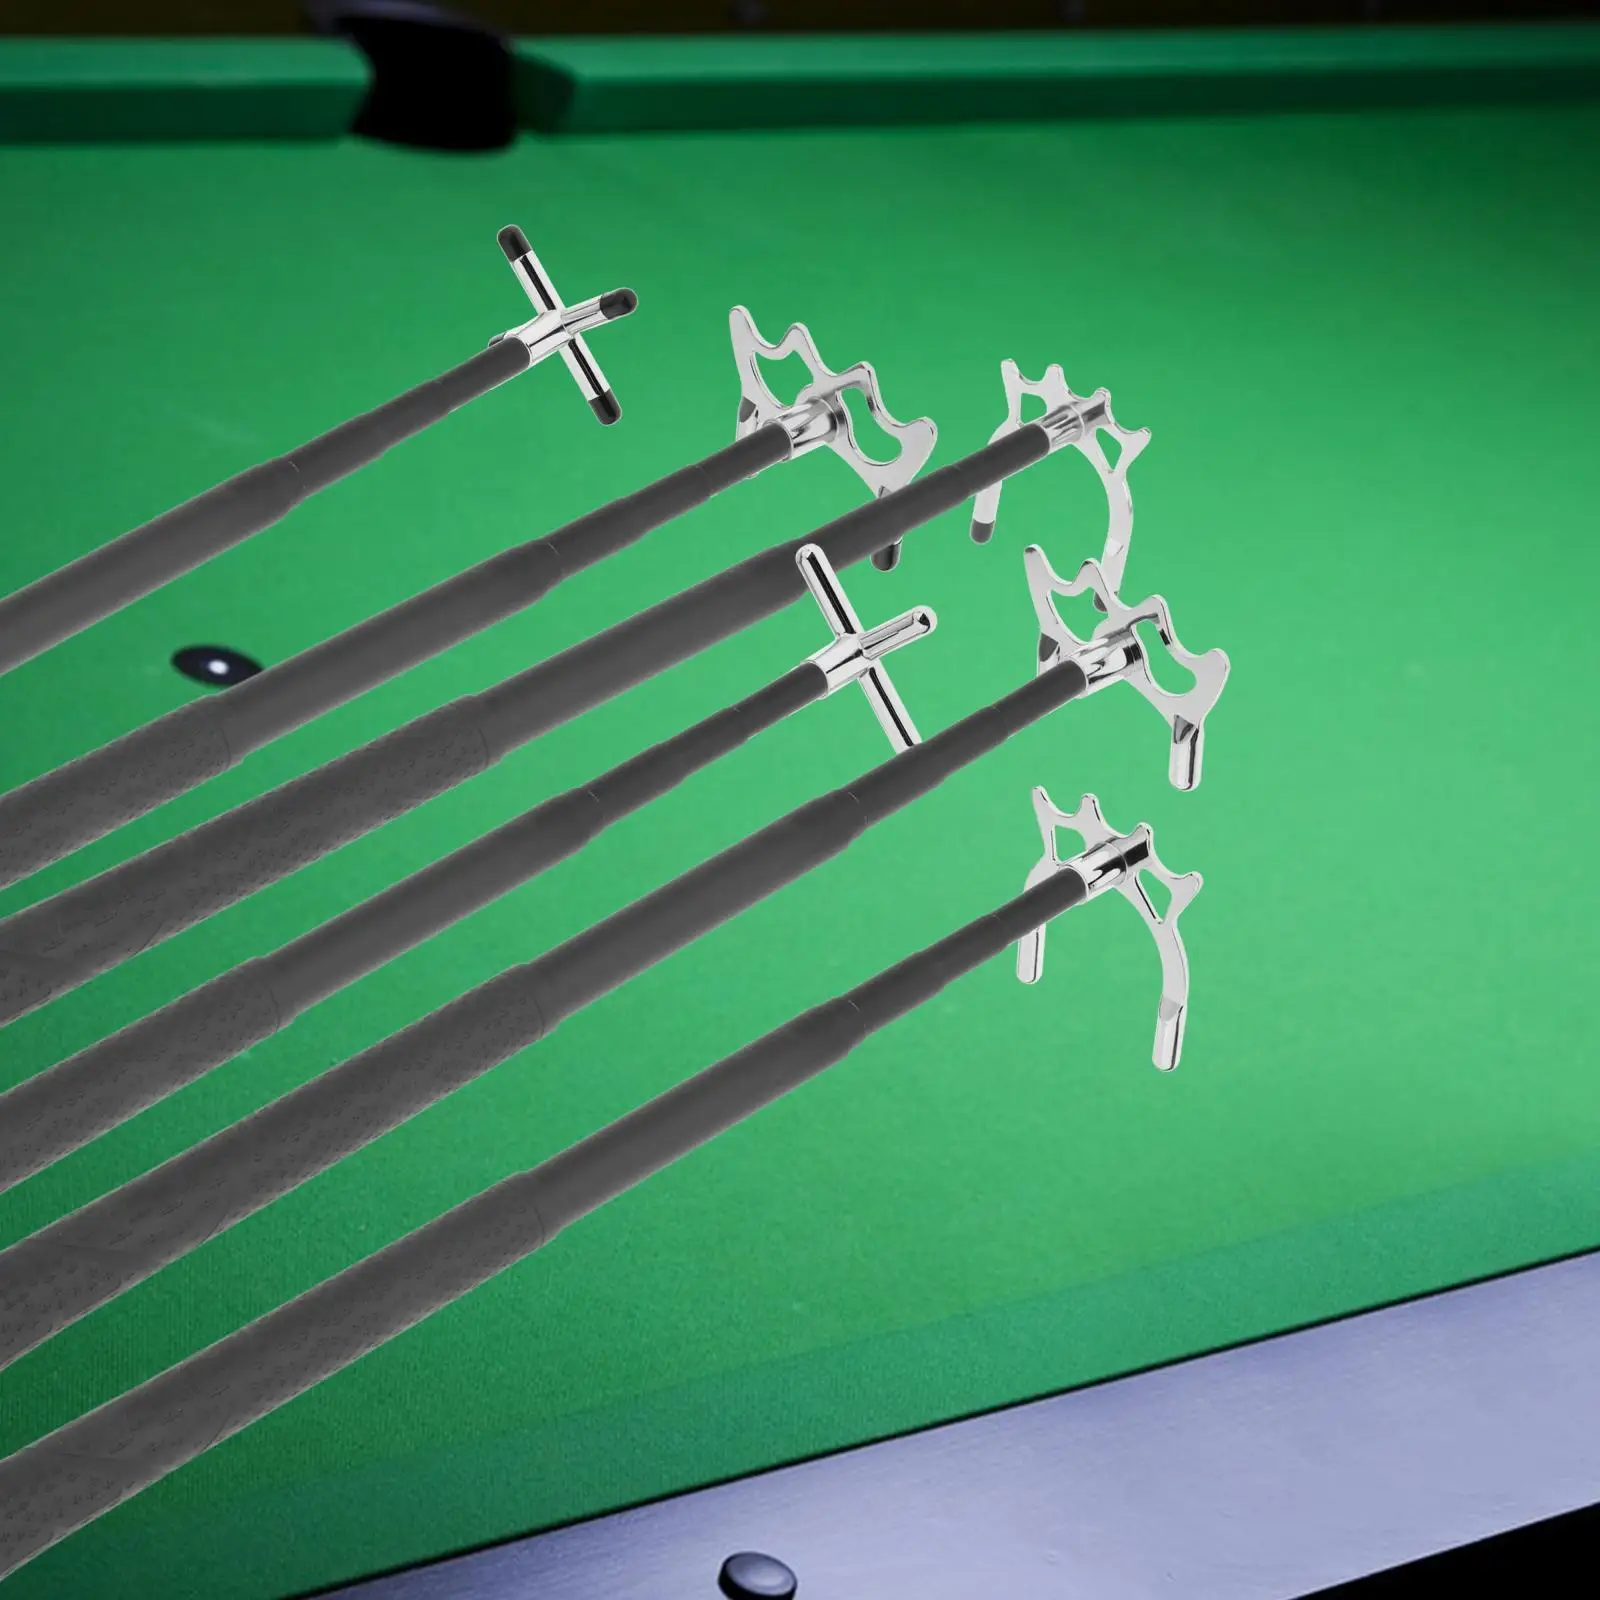 Telescopic Billiards Cue Stick Bridge for Pool Table Training Indoor Game